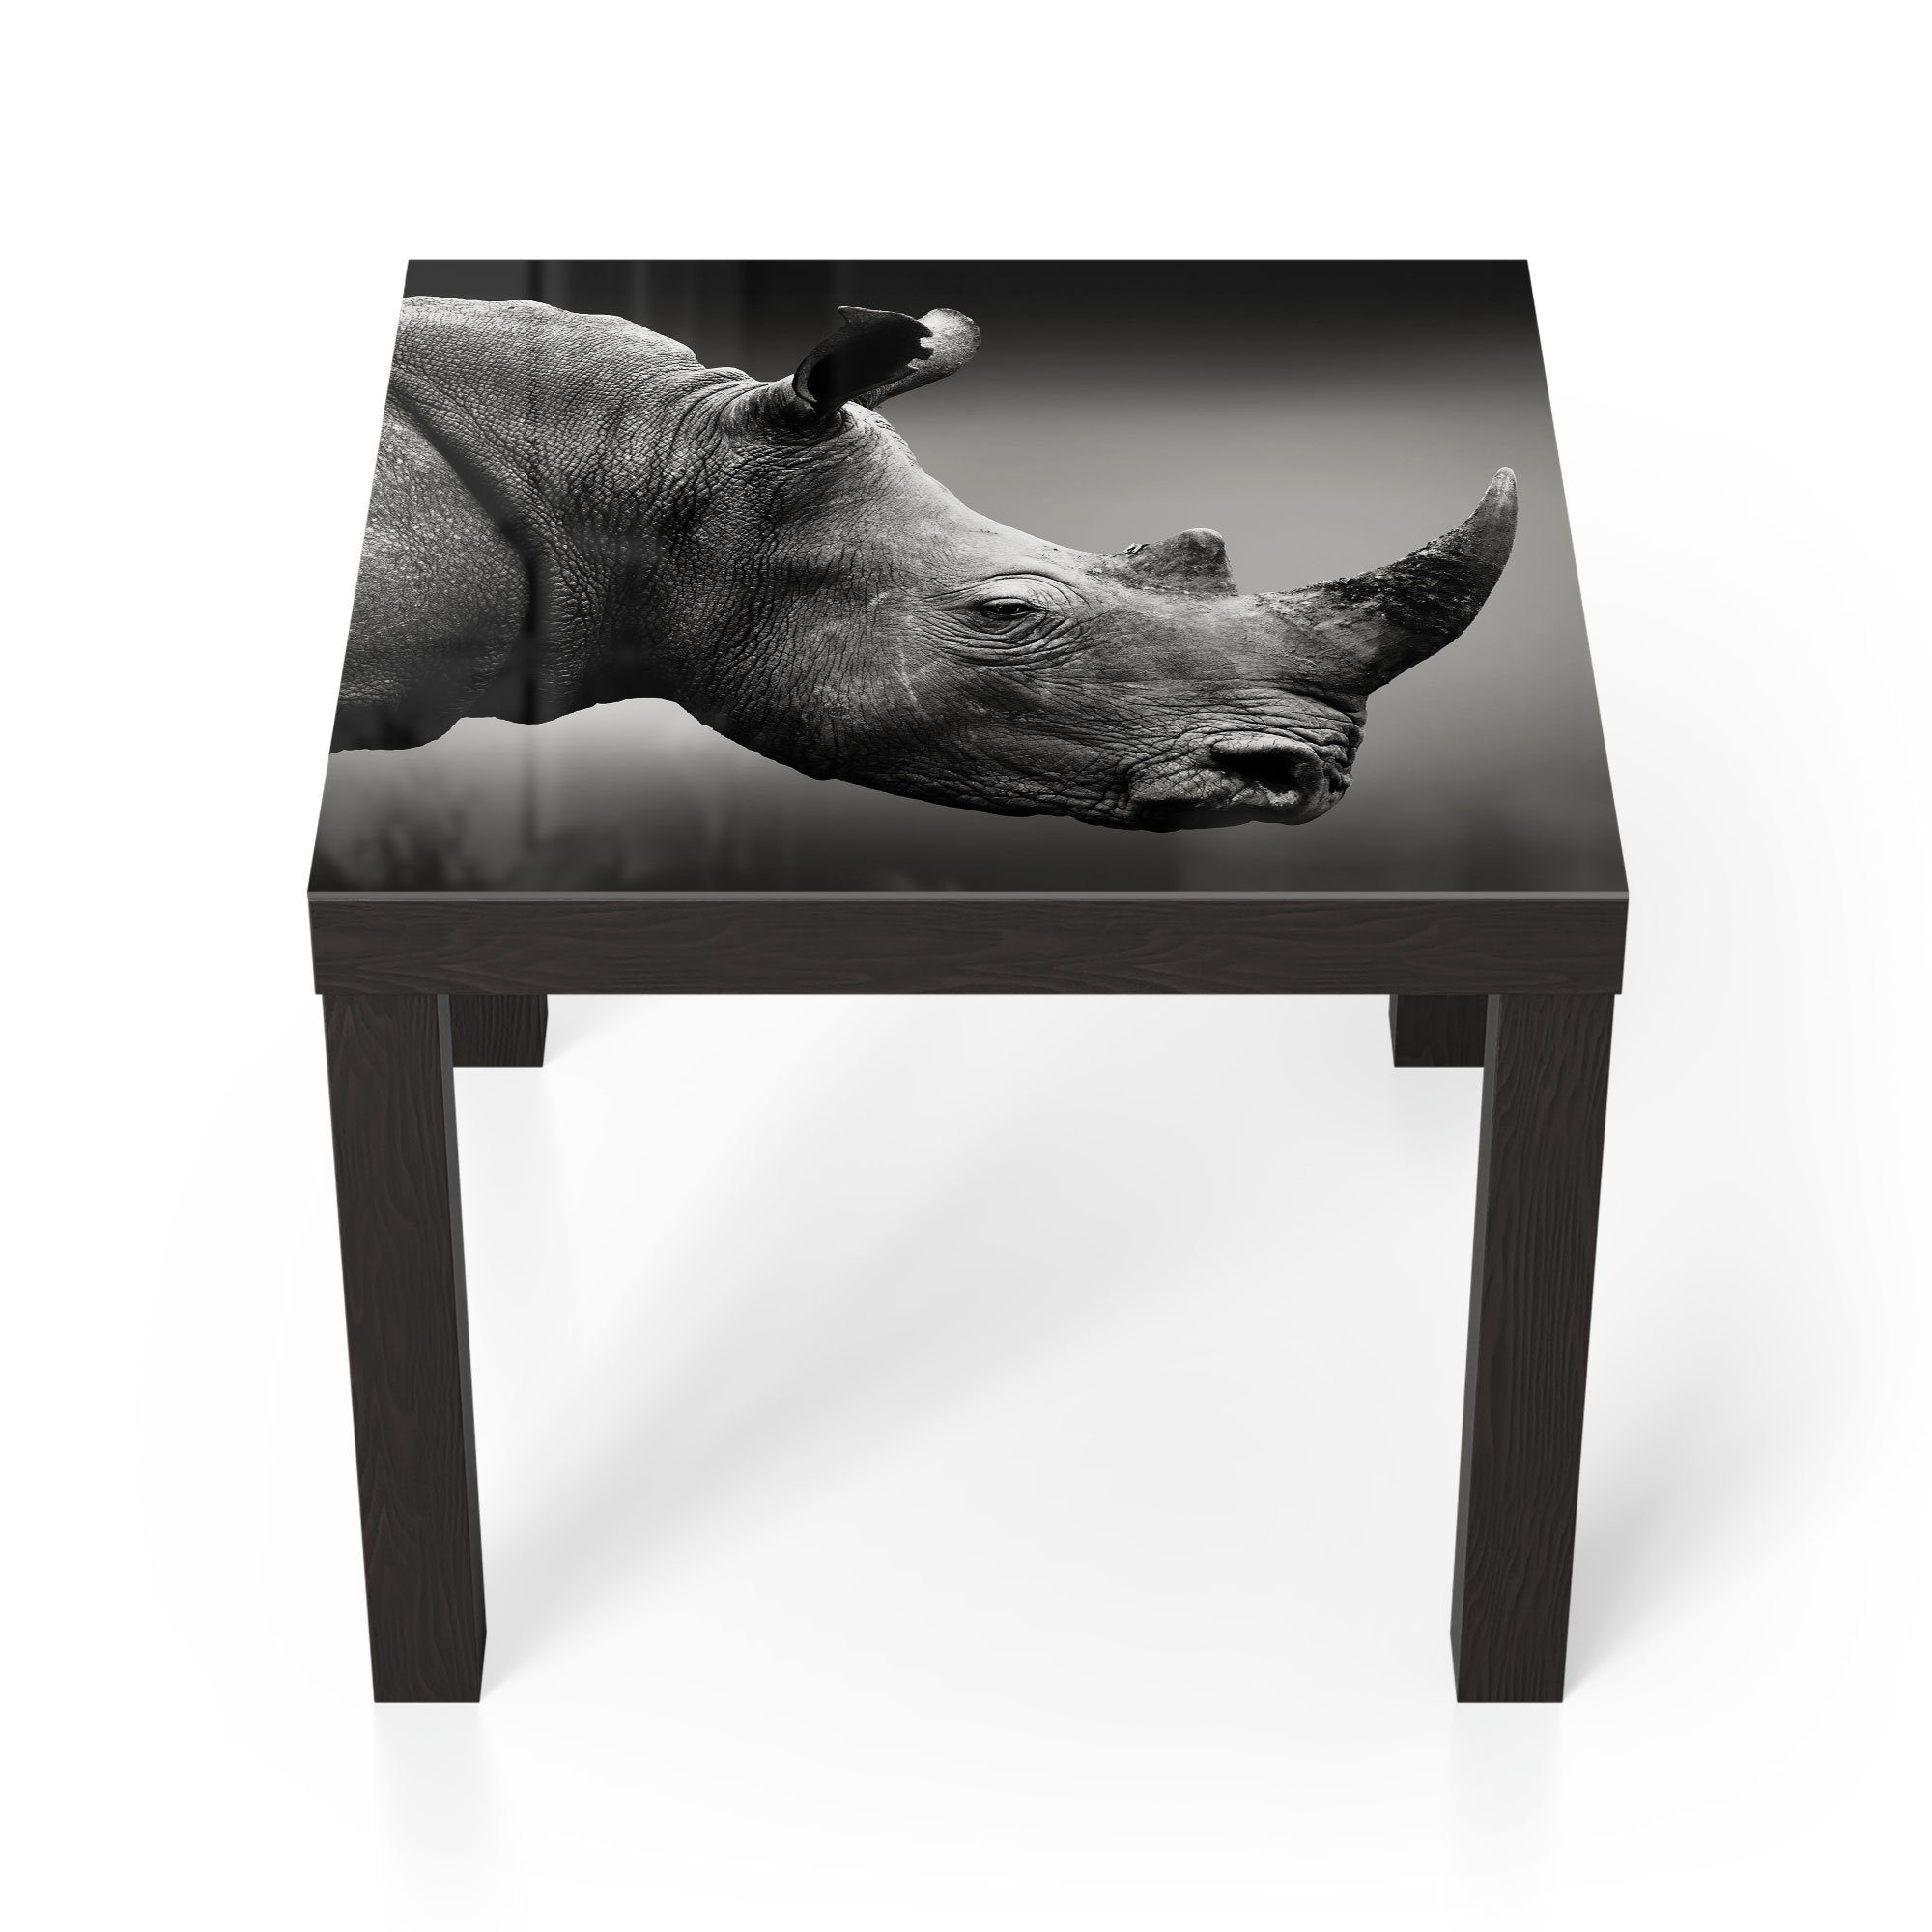 DEQORI Couchtisch 'Nashorn im Profil', Glas Beistelltisch Glastisch modern Schwarz